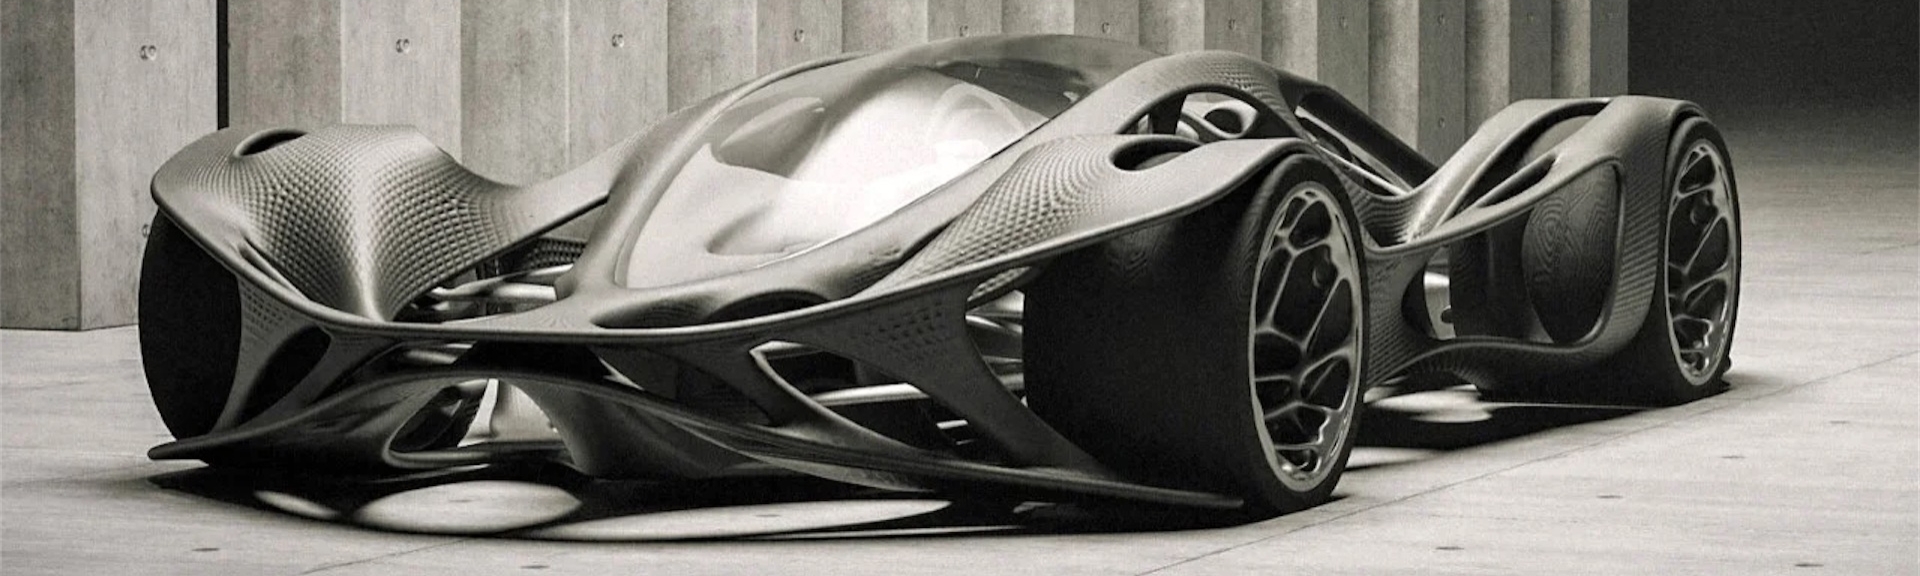 futuristic-car-design-by-algoritms-Christan-kromme-Speaker-Futurist